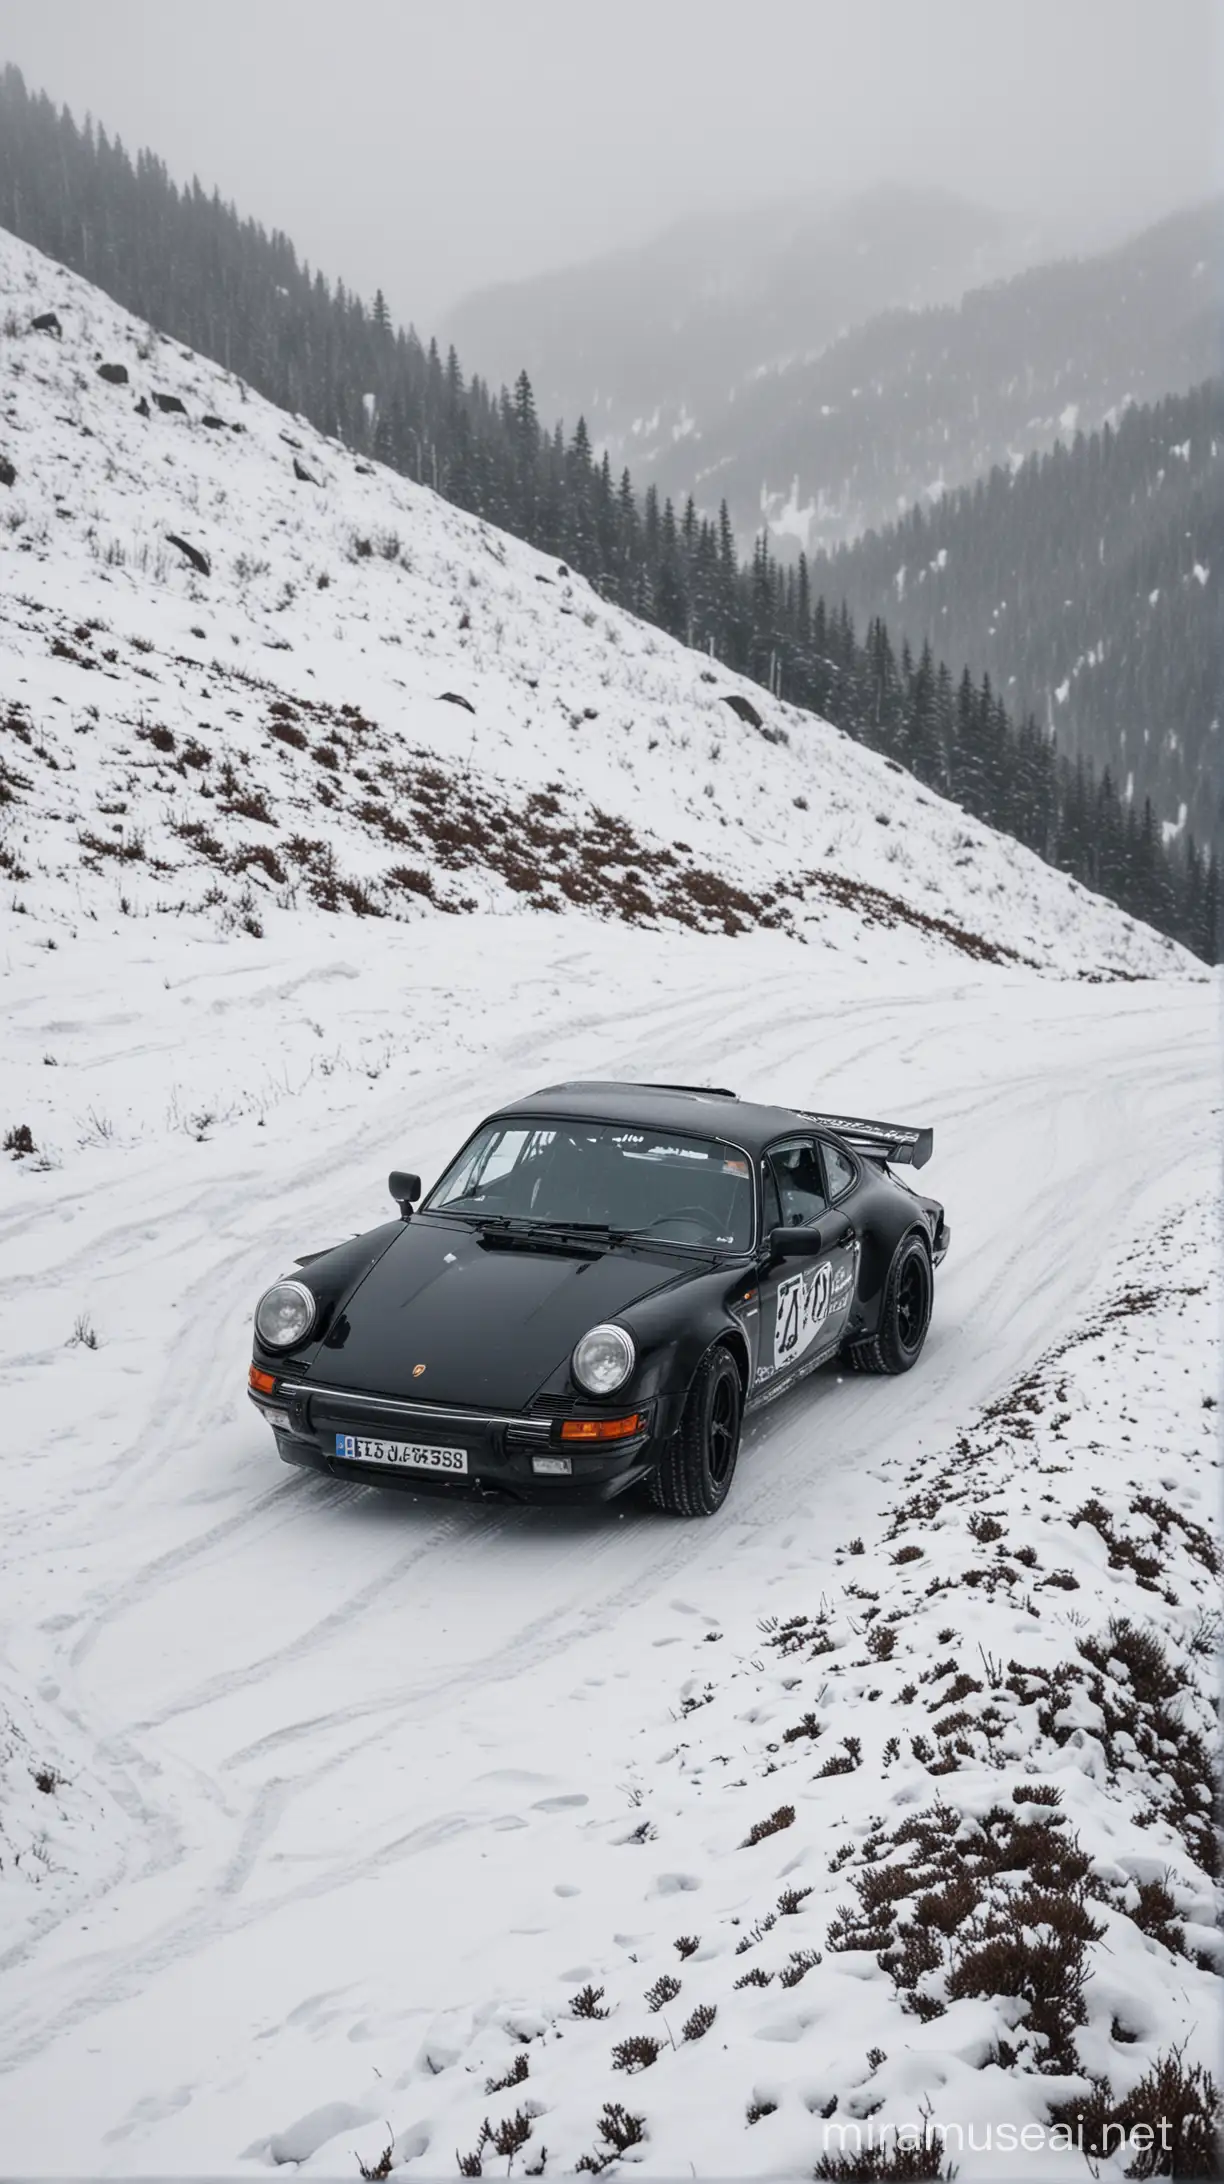 Snowy Mountain Rally with a Sleek Black Porsche